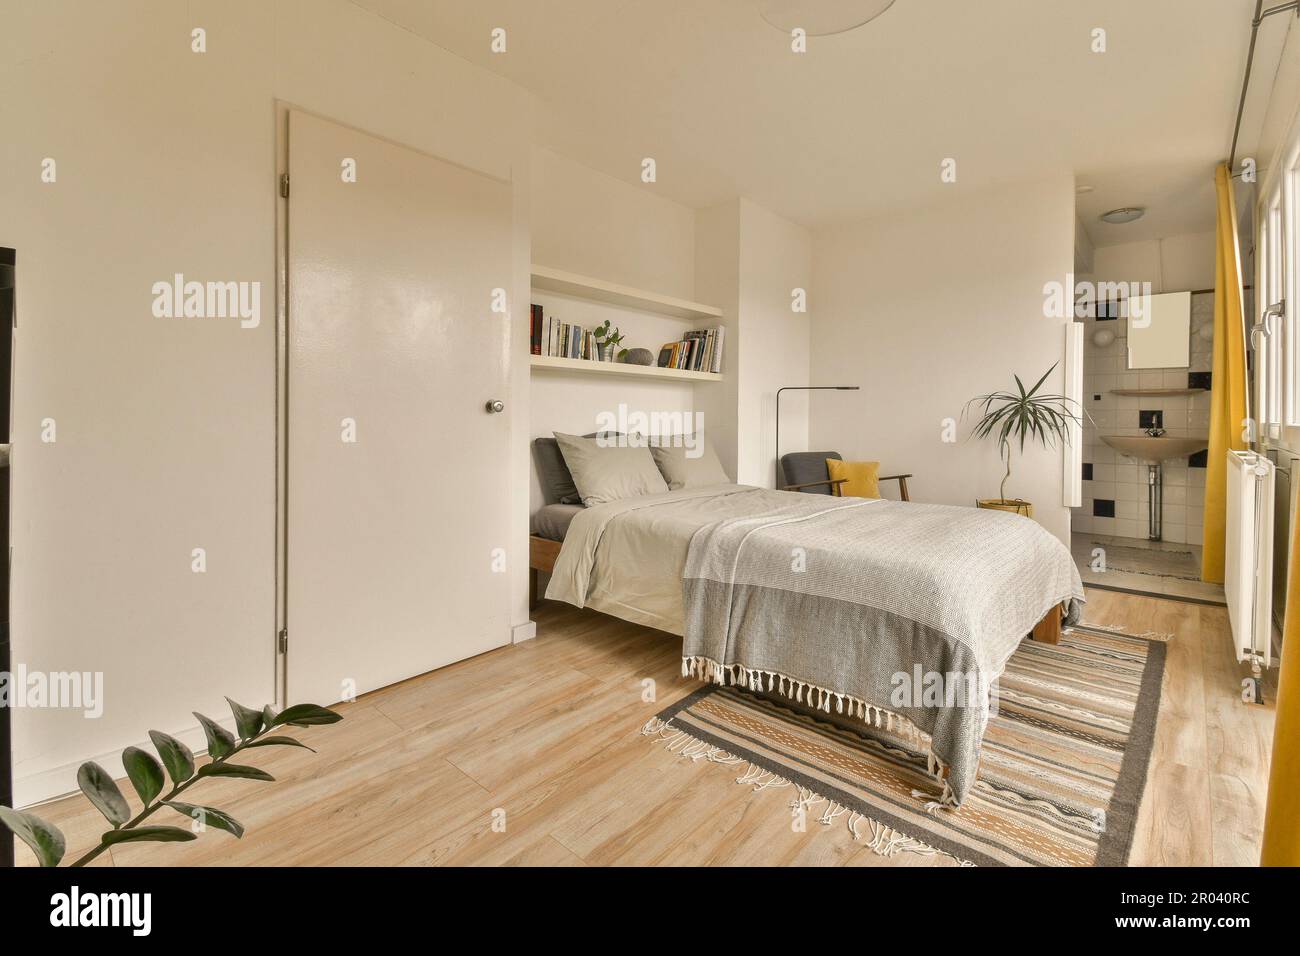 Ein Schlafzimmer mit weißen Wänden und Holzfußboden. Das Zimmer hat ein Bett und ist von gelben Vorhängen umgeben Stockfoto